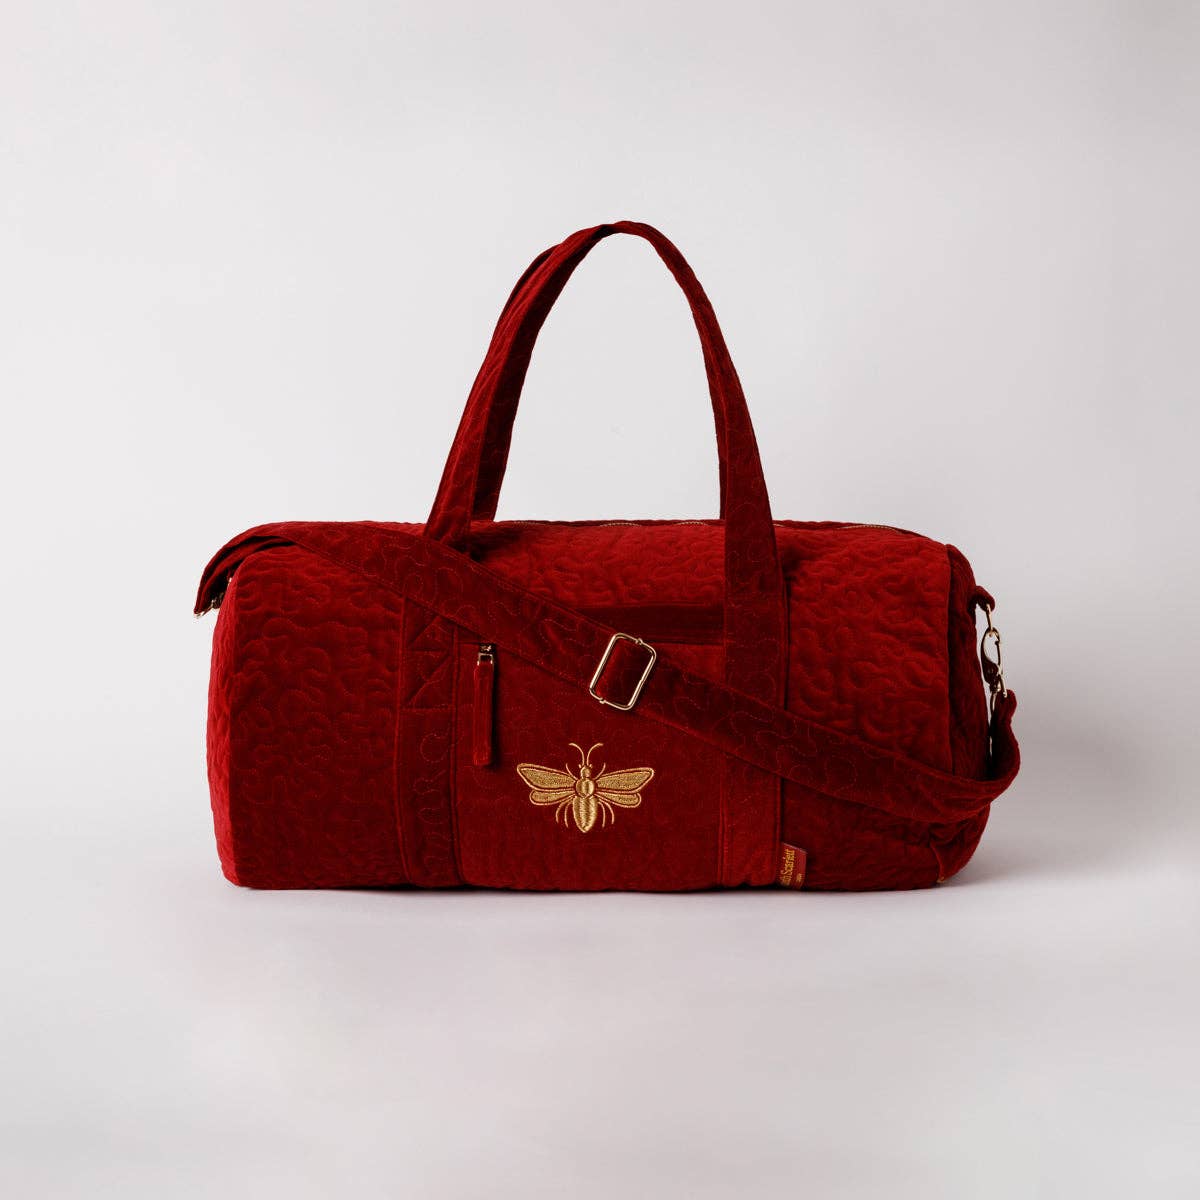 Elizabeth Scarlett Ltd - Honey Bee Overnight Bag: Charcoal / Velvet